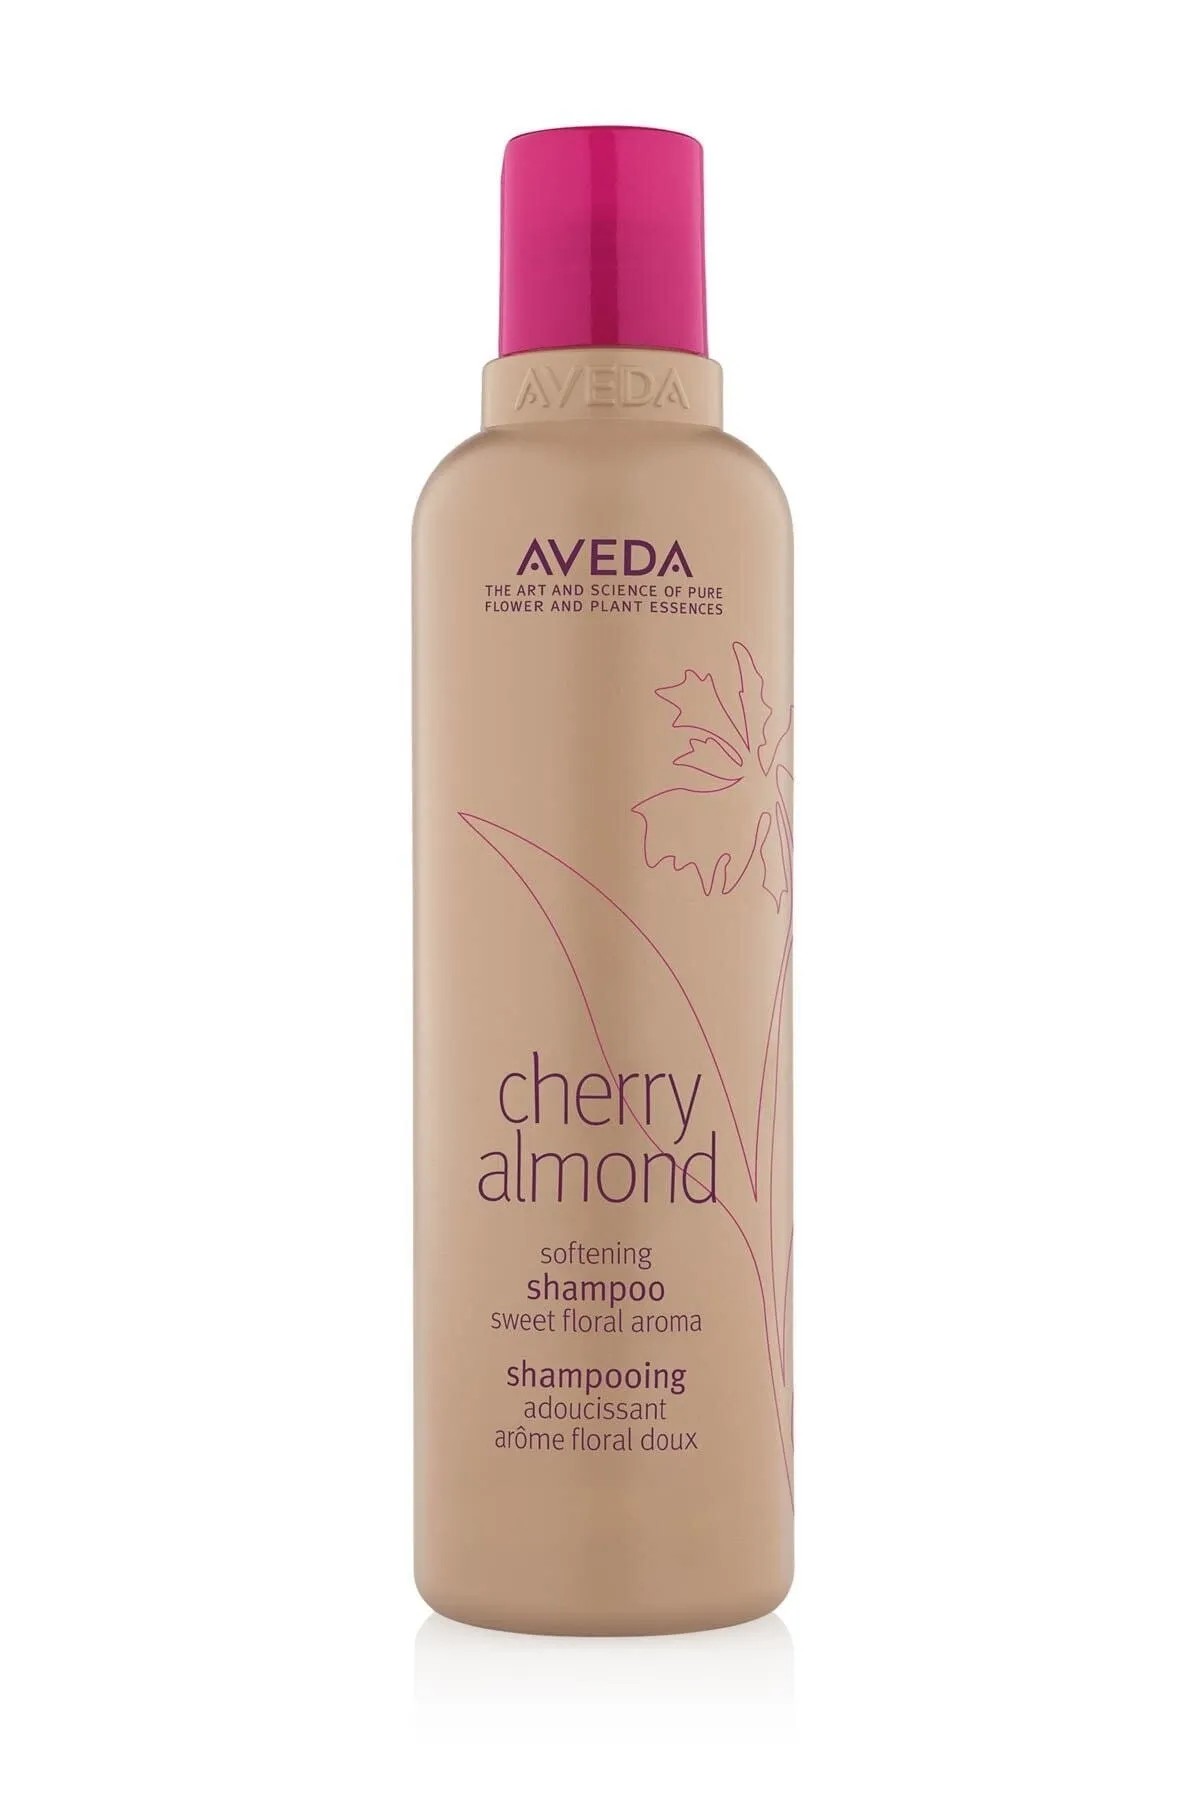 Aveda Cherry Almond Şampuanı 250 ml - Kuru Saçlar İçin Canlandırıcı Etki